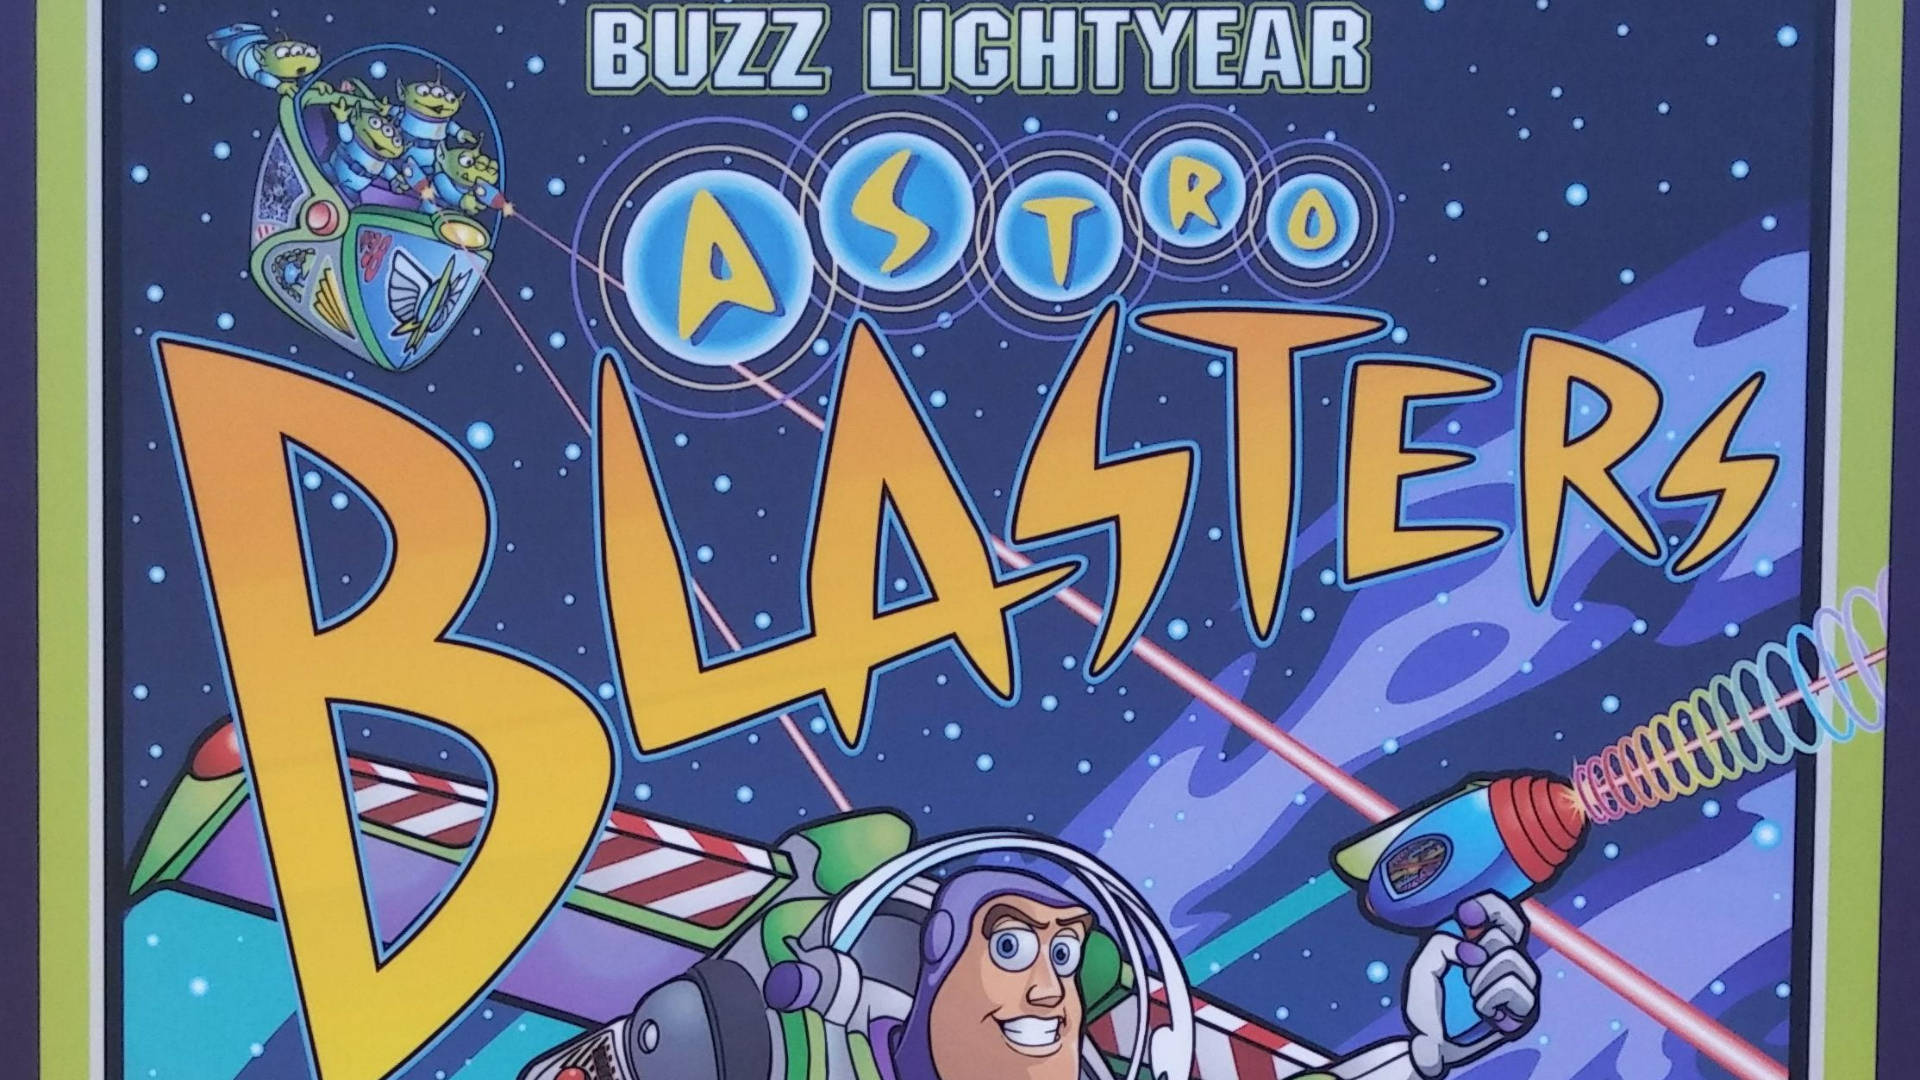 Buzzlightyear Do Comando Estelar Astro Blasters. Papel de Parede